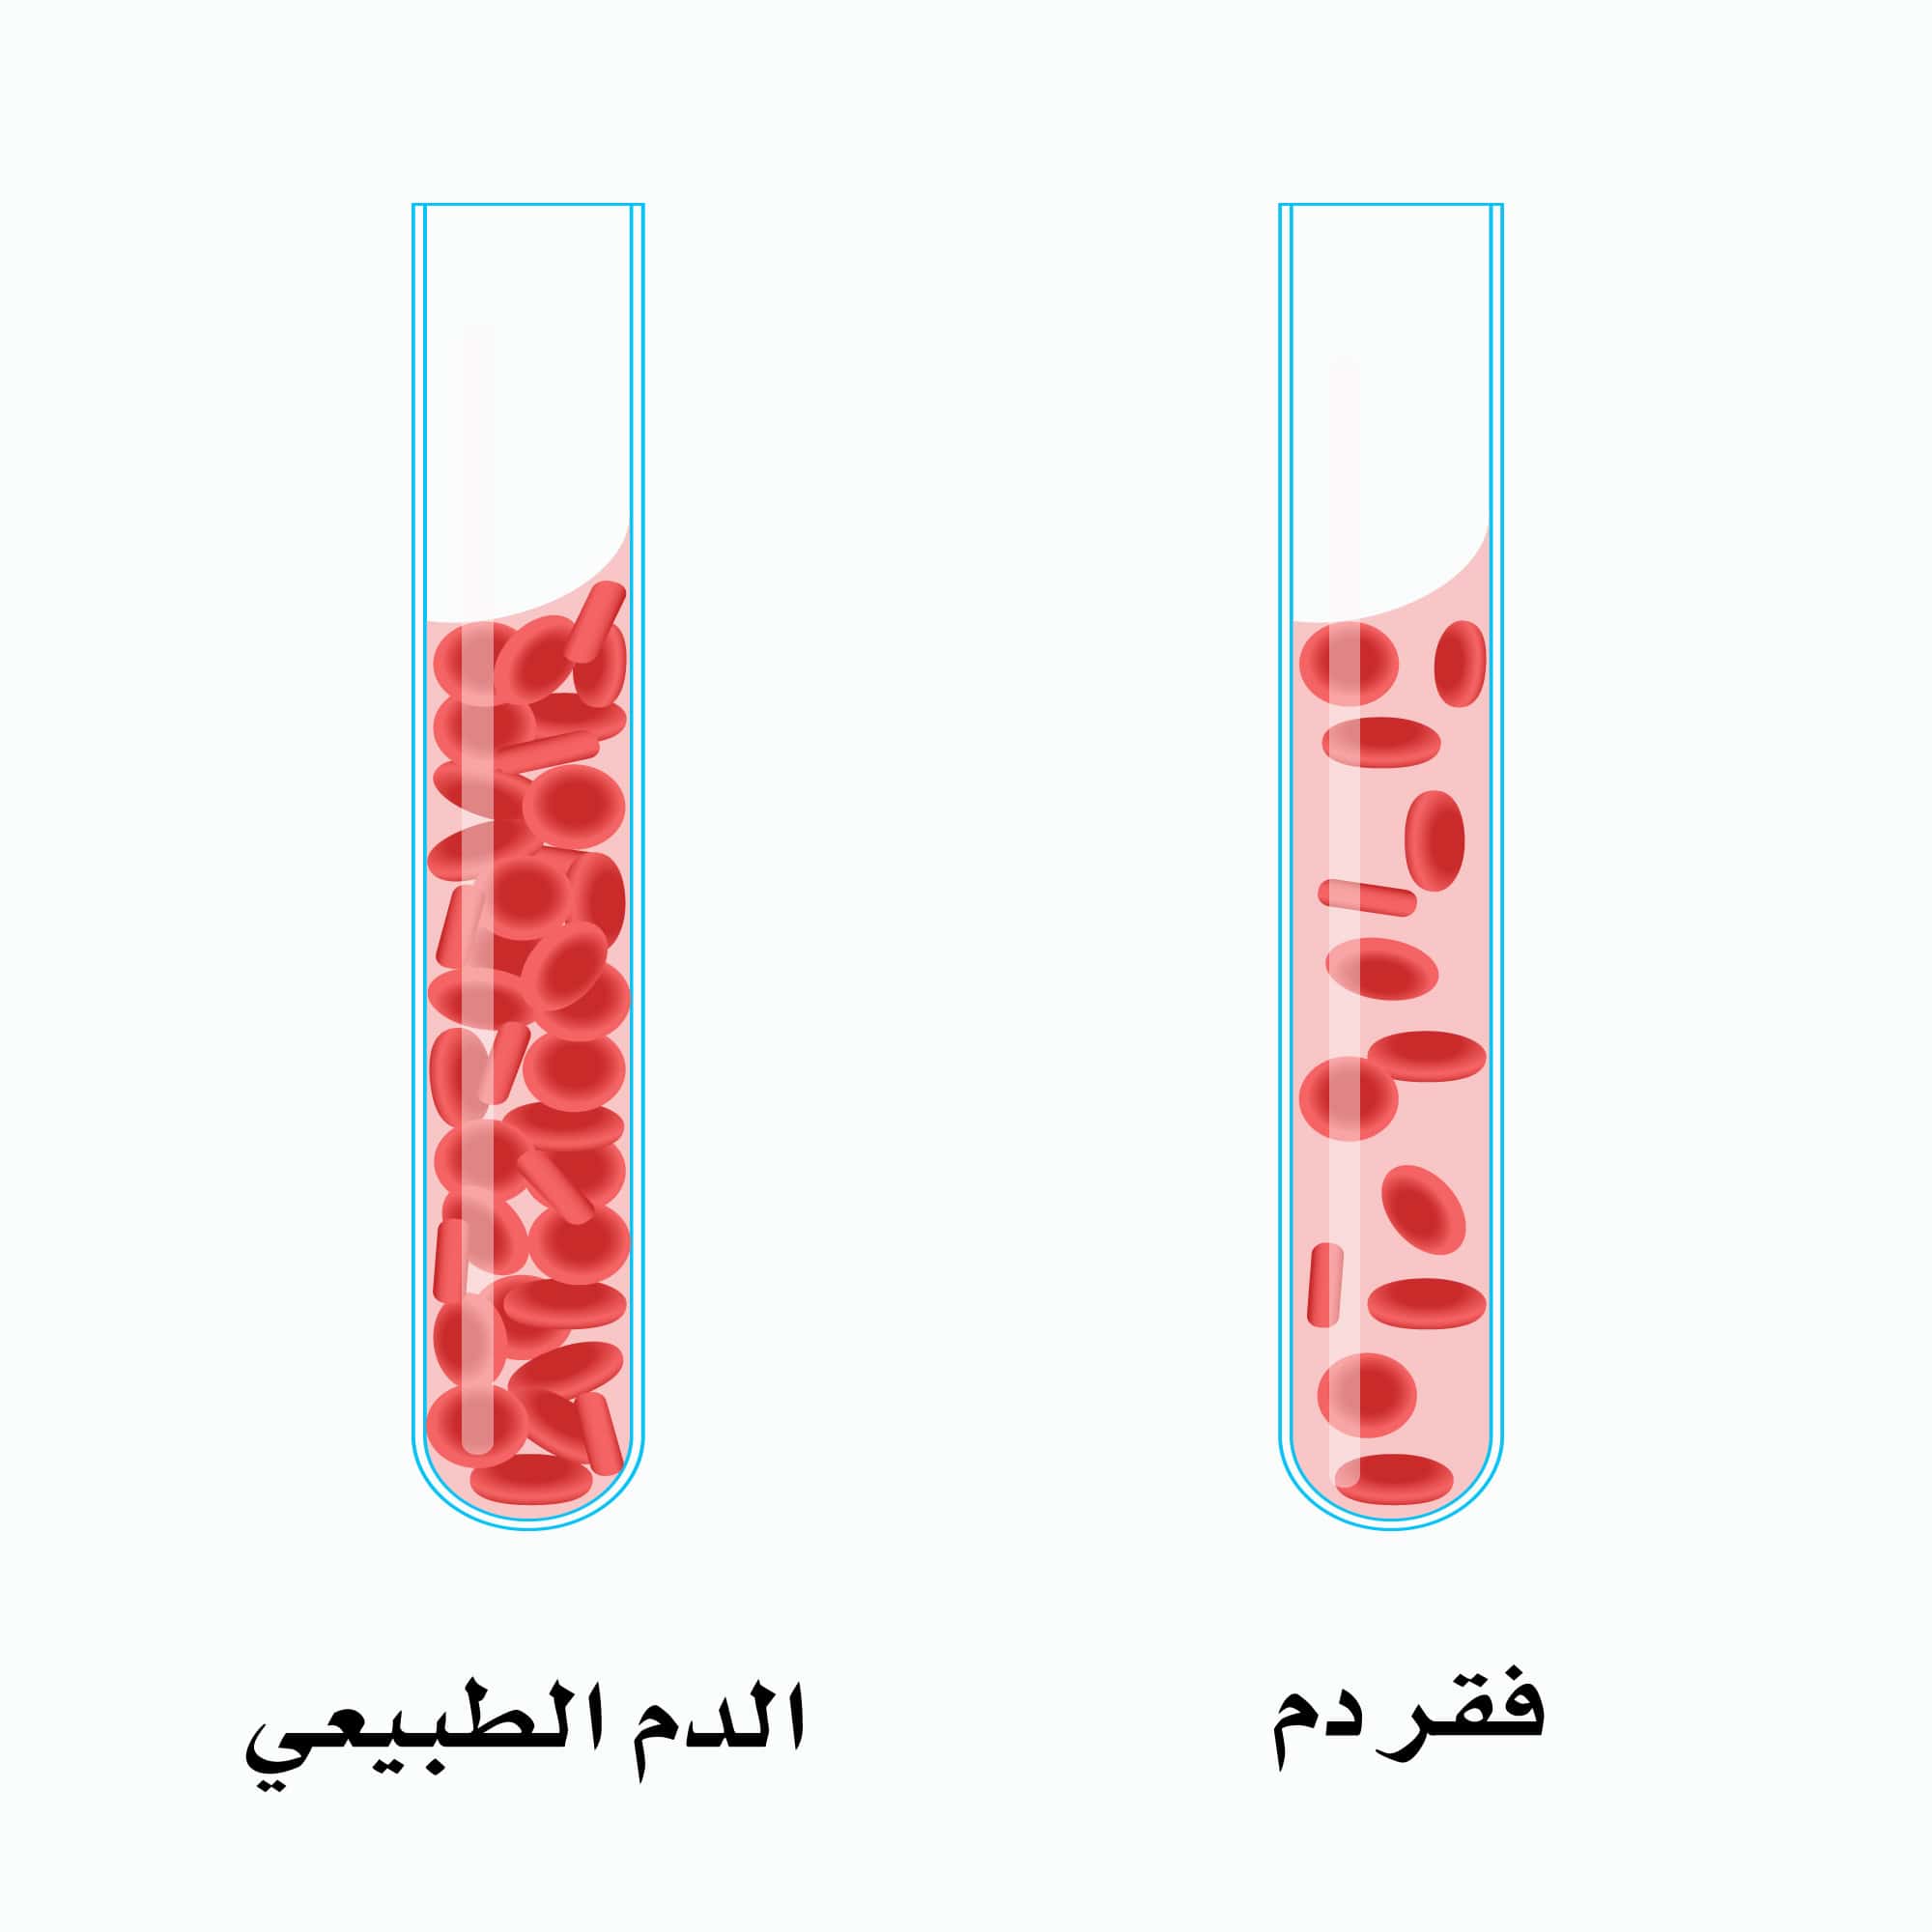 الفرق بين الدم الطبيعي والدم المصاب بـ الأنيميا